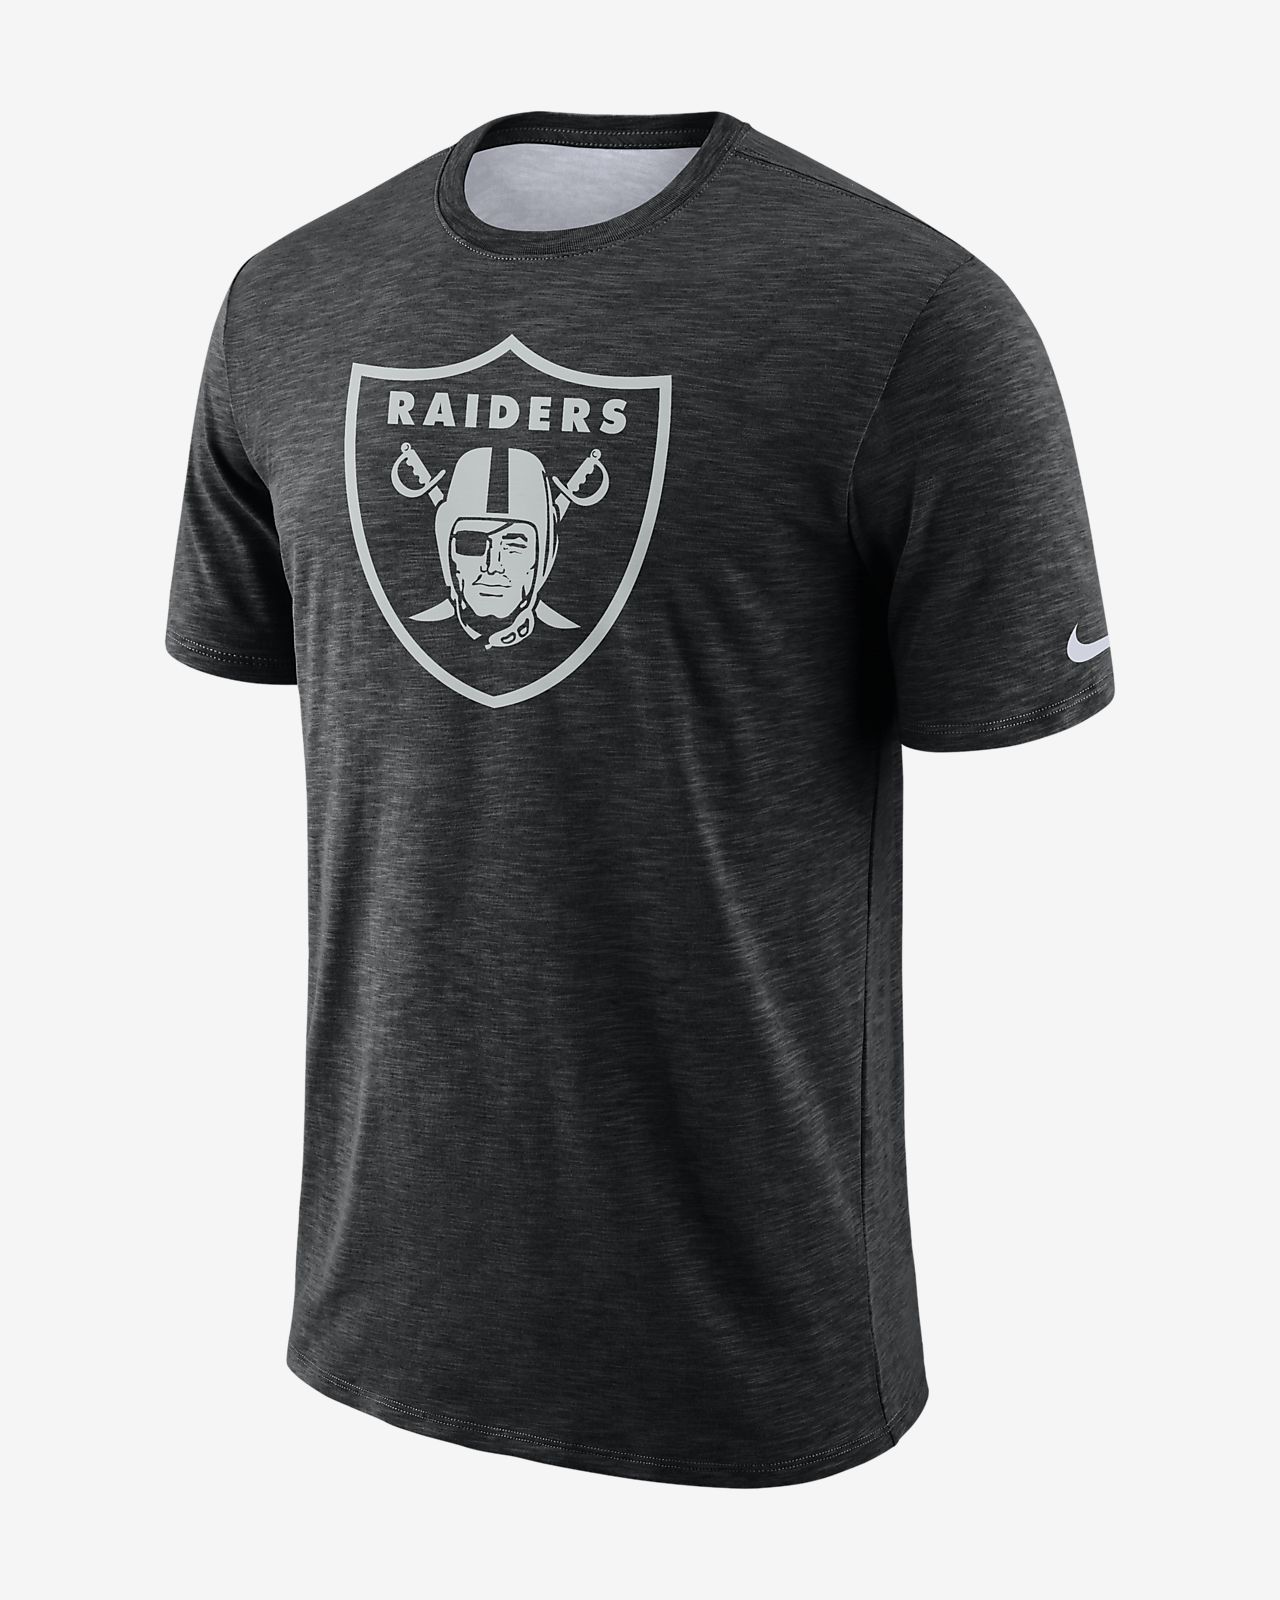 raiders dri fit shirts